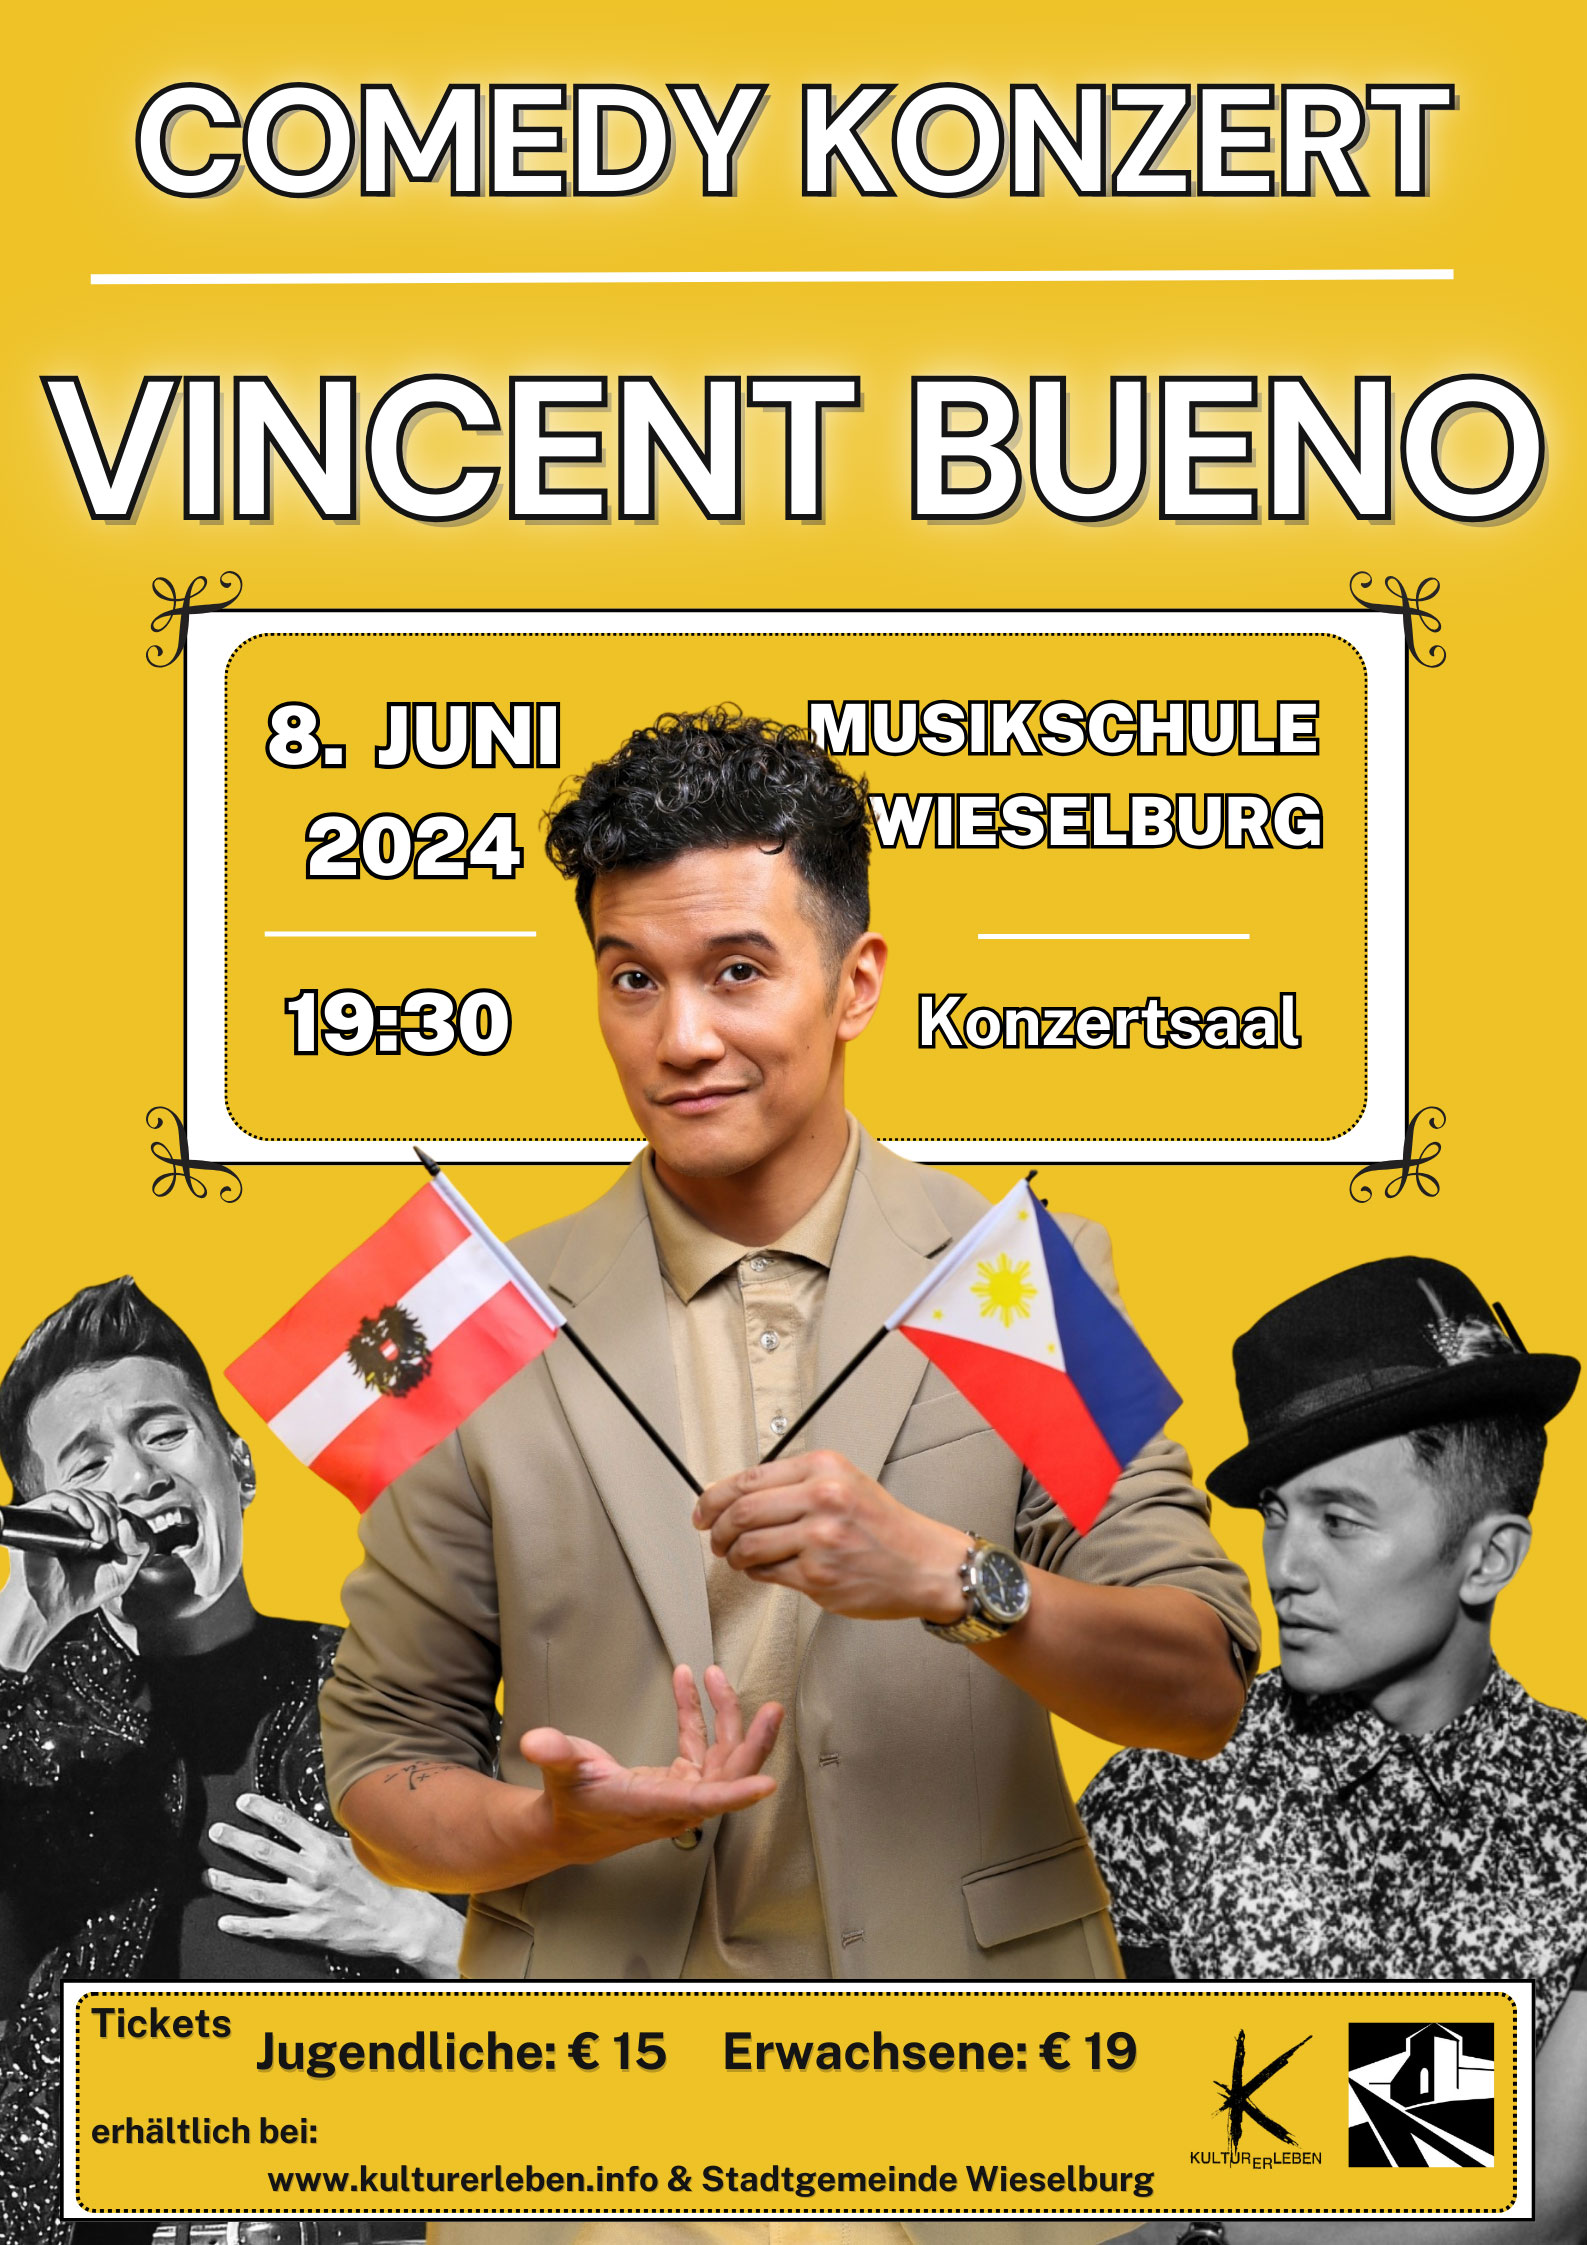 VincentBueno